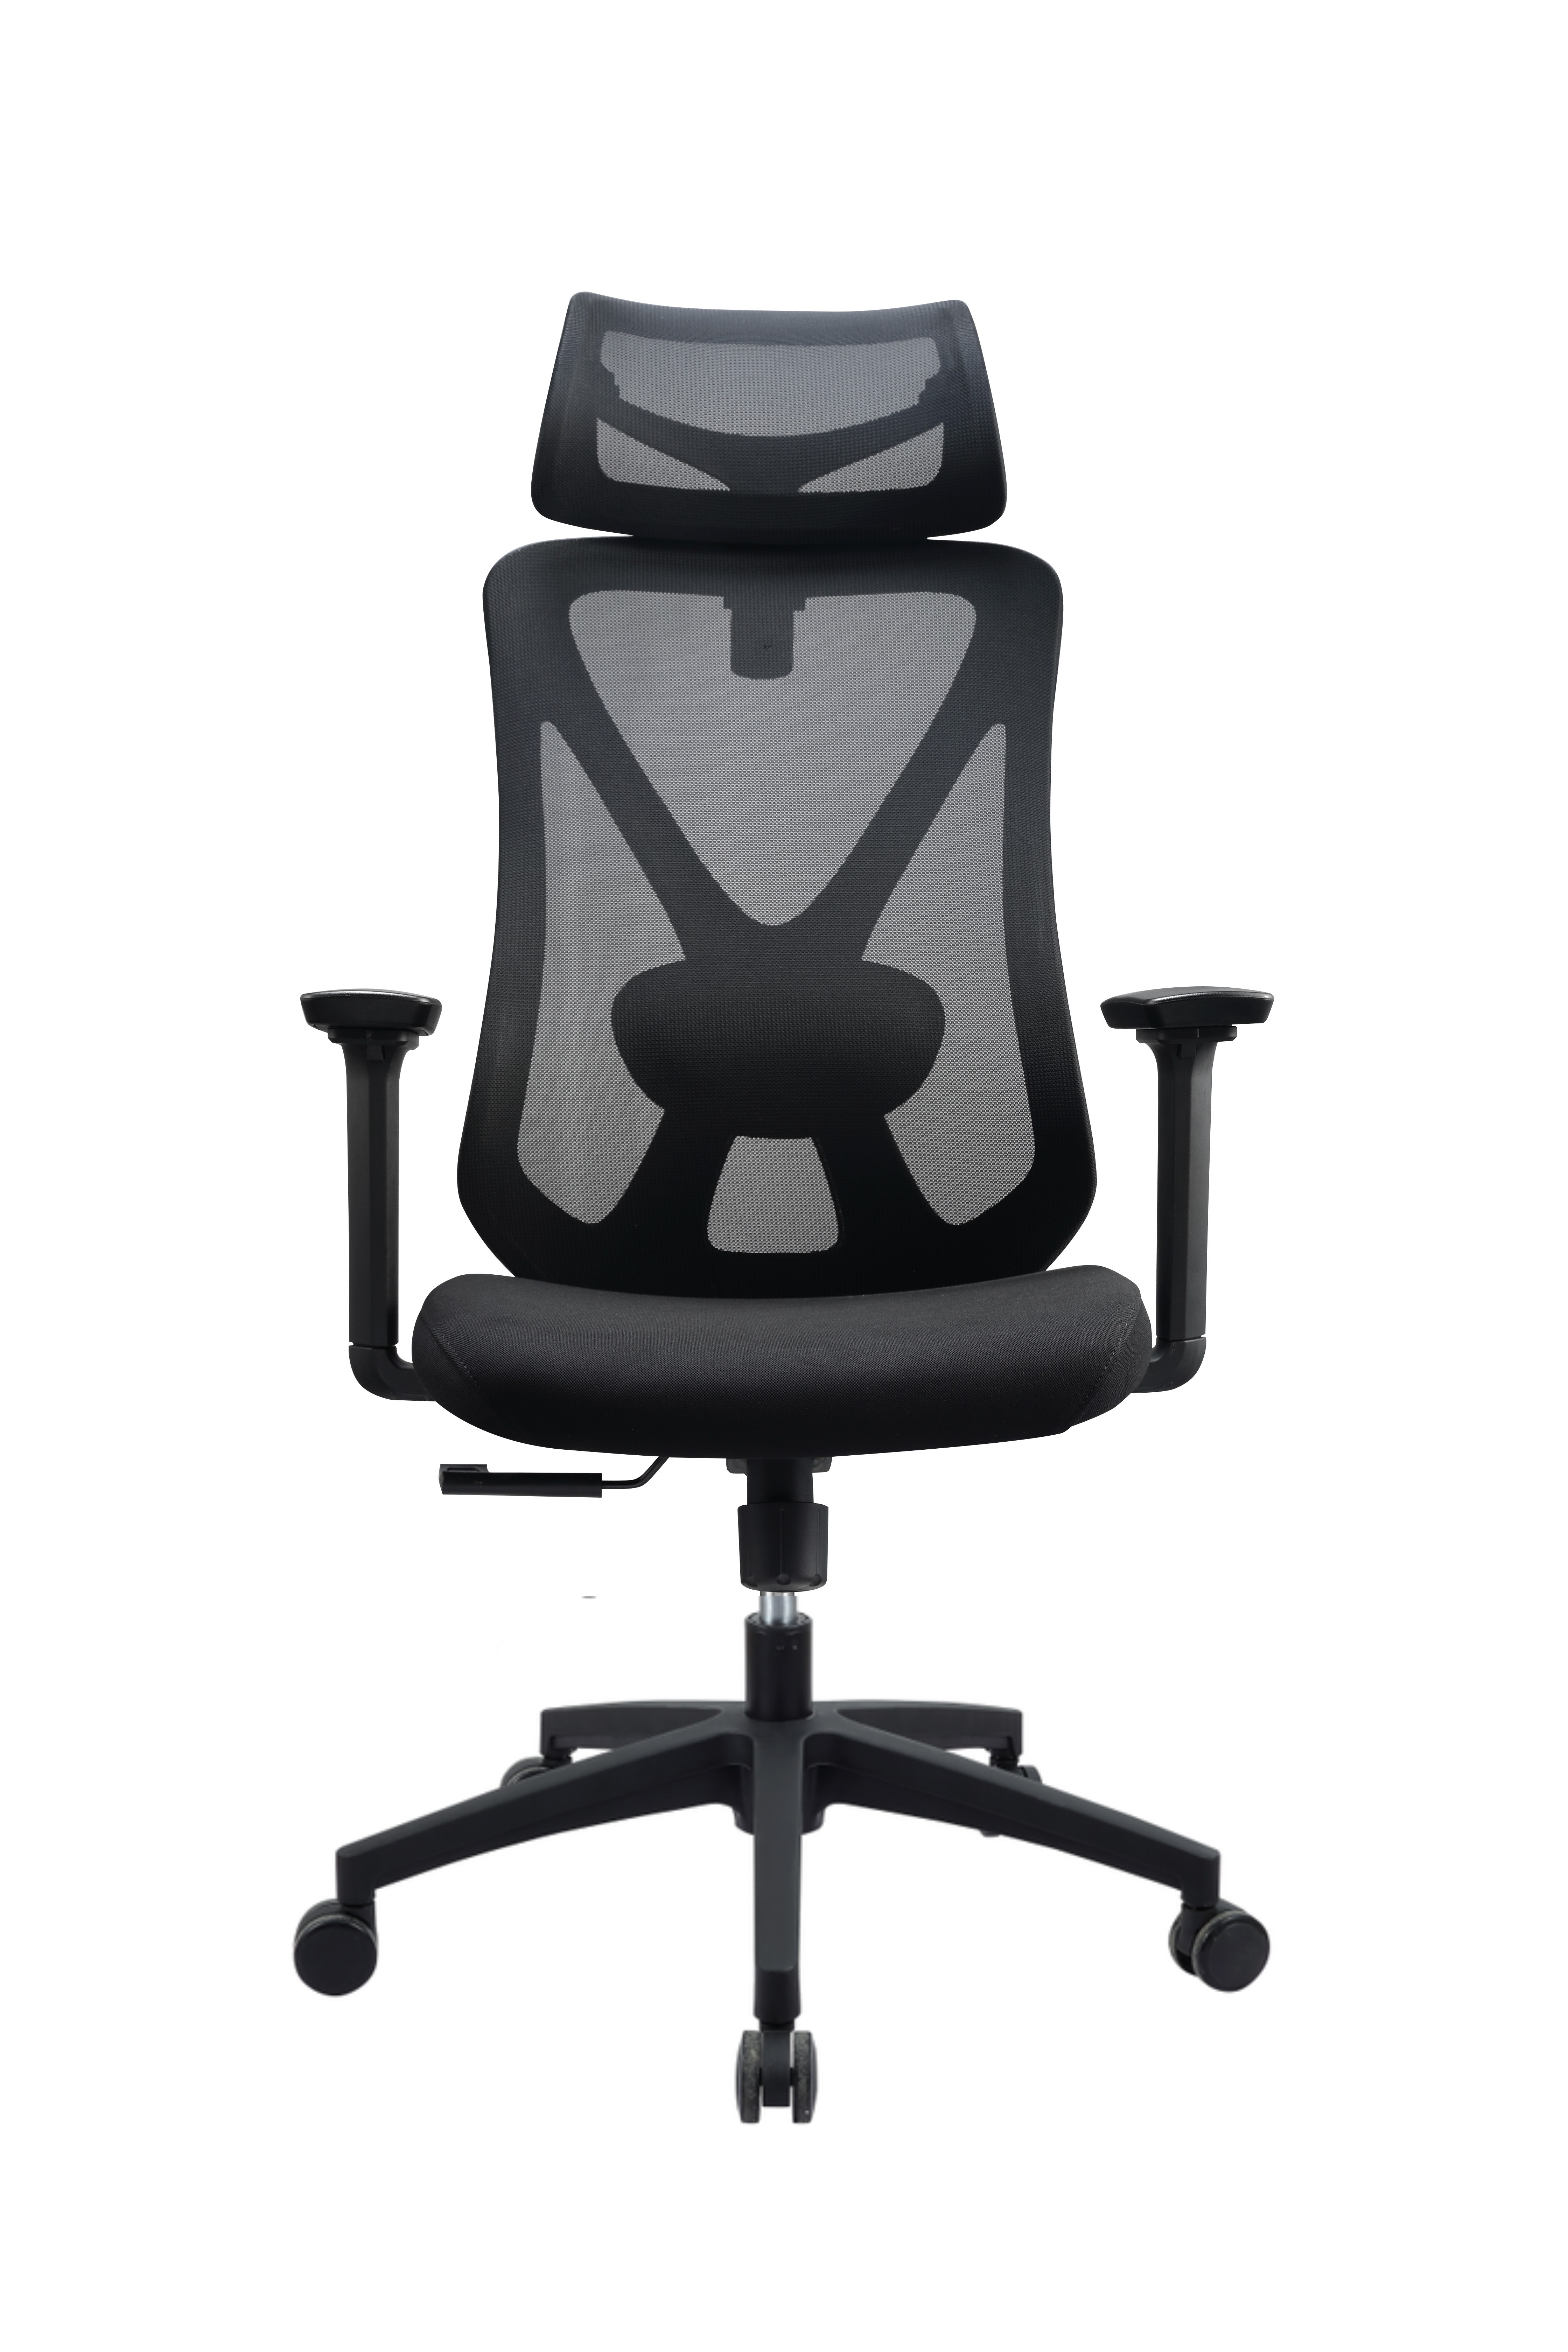 中国 Newcity 629A 高品质办公家具高背人体工学网椅舒适现代设计师旋转网椅电脑网椅供应商佛山中国 制造商